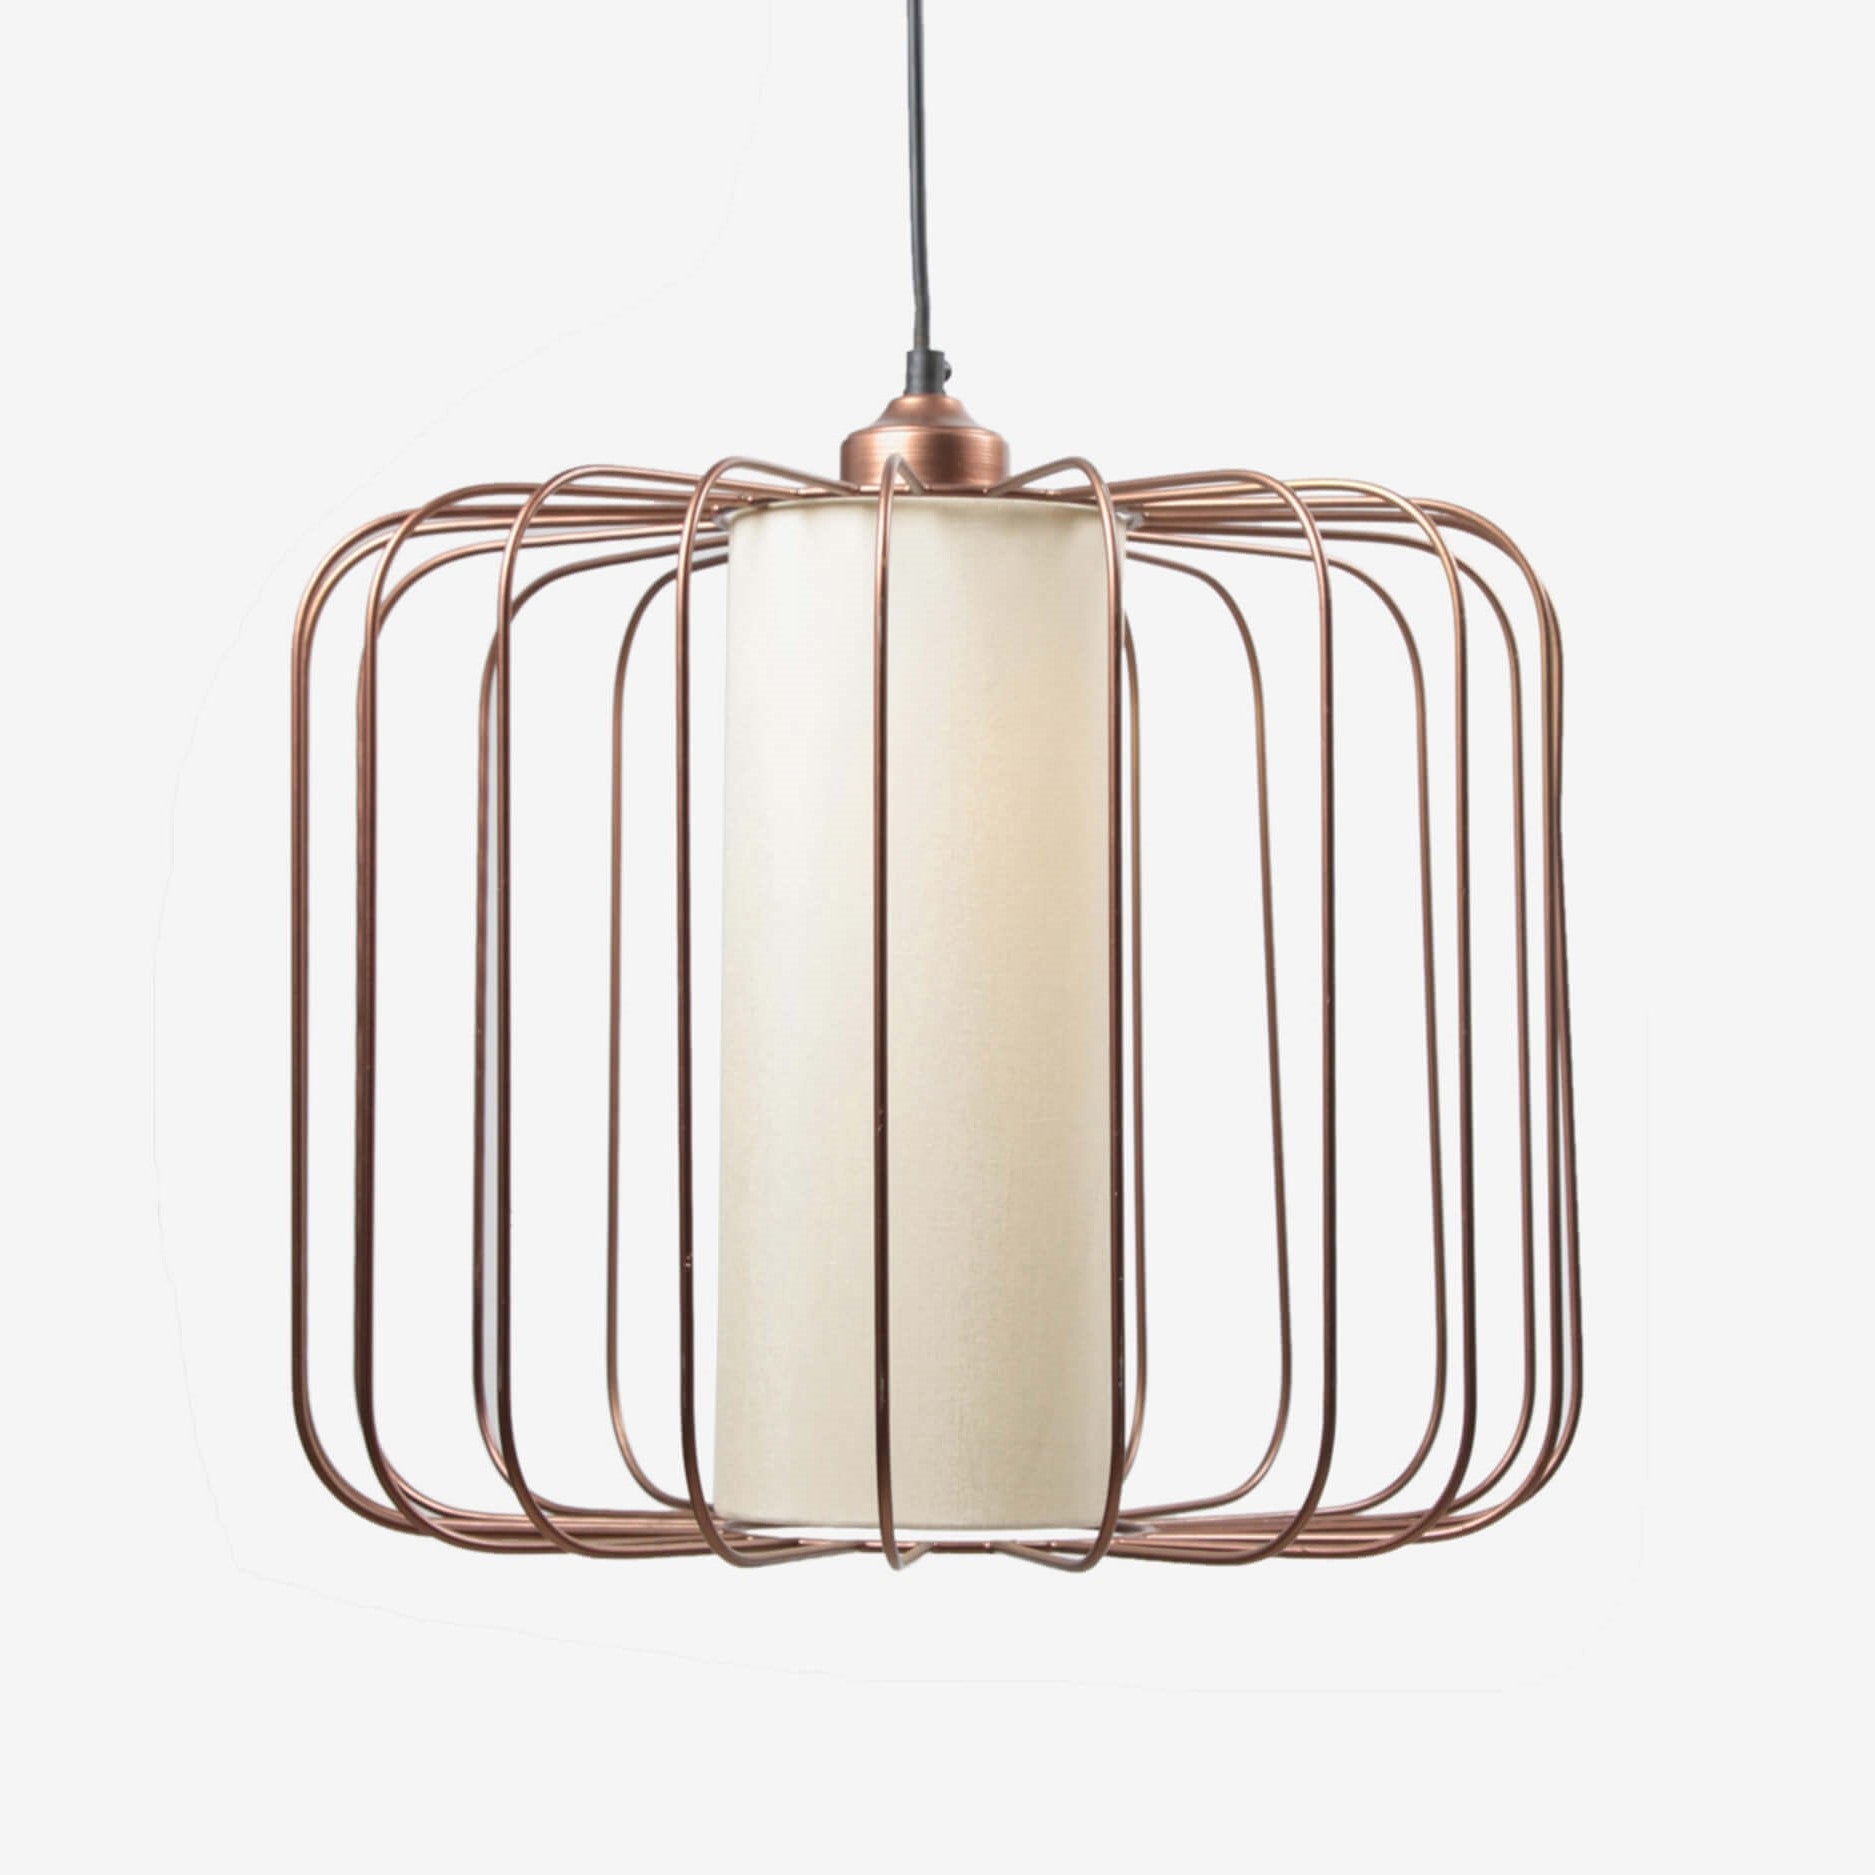 Merriam Copper Hanging Lamp